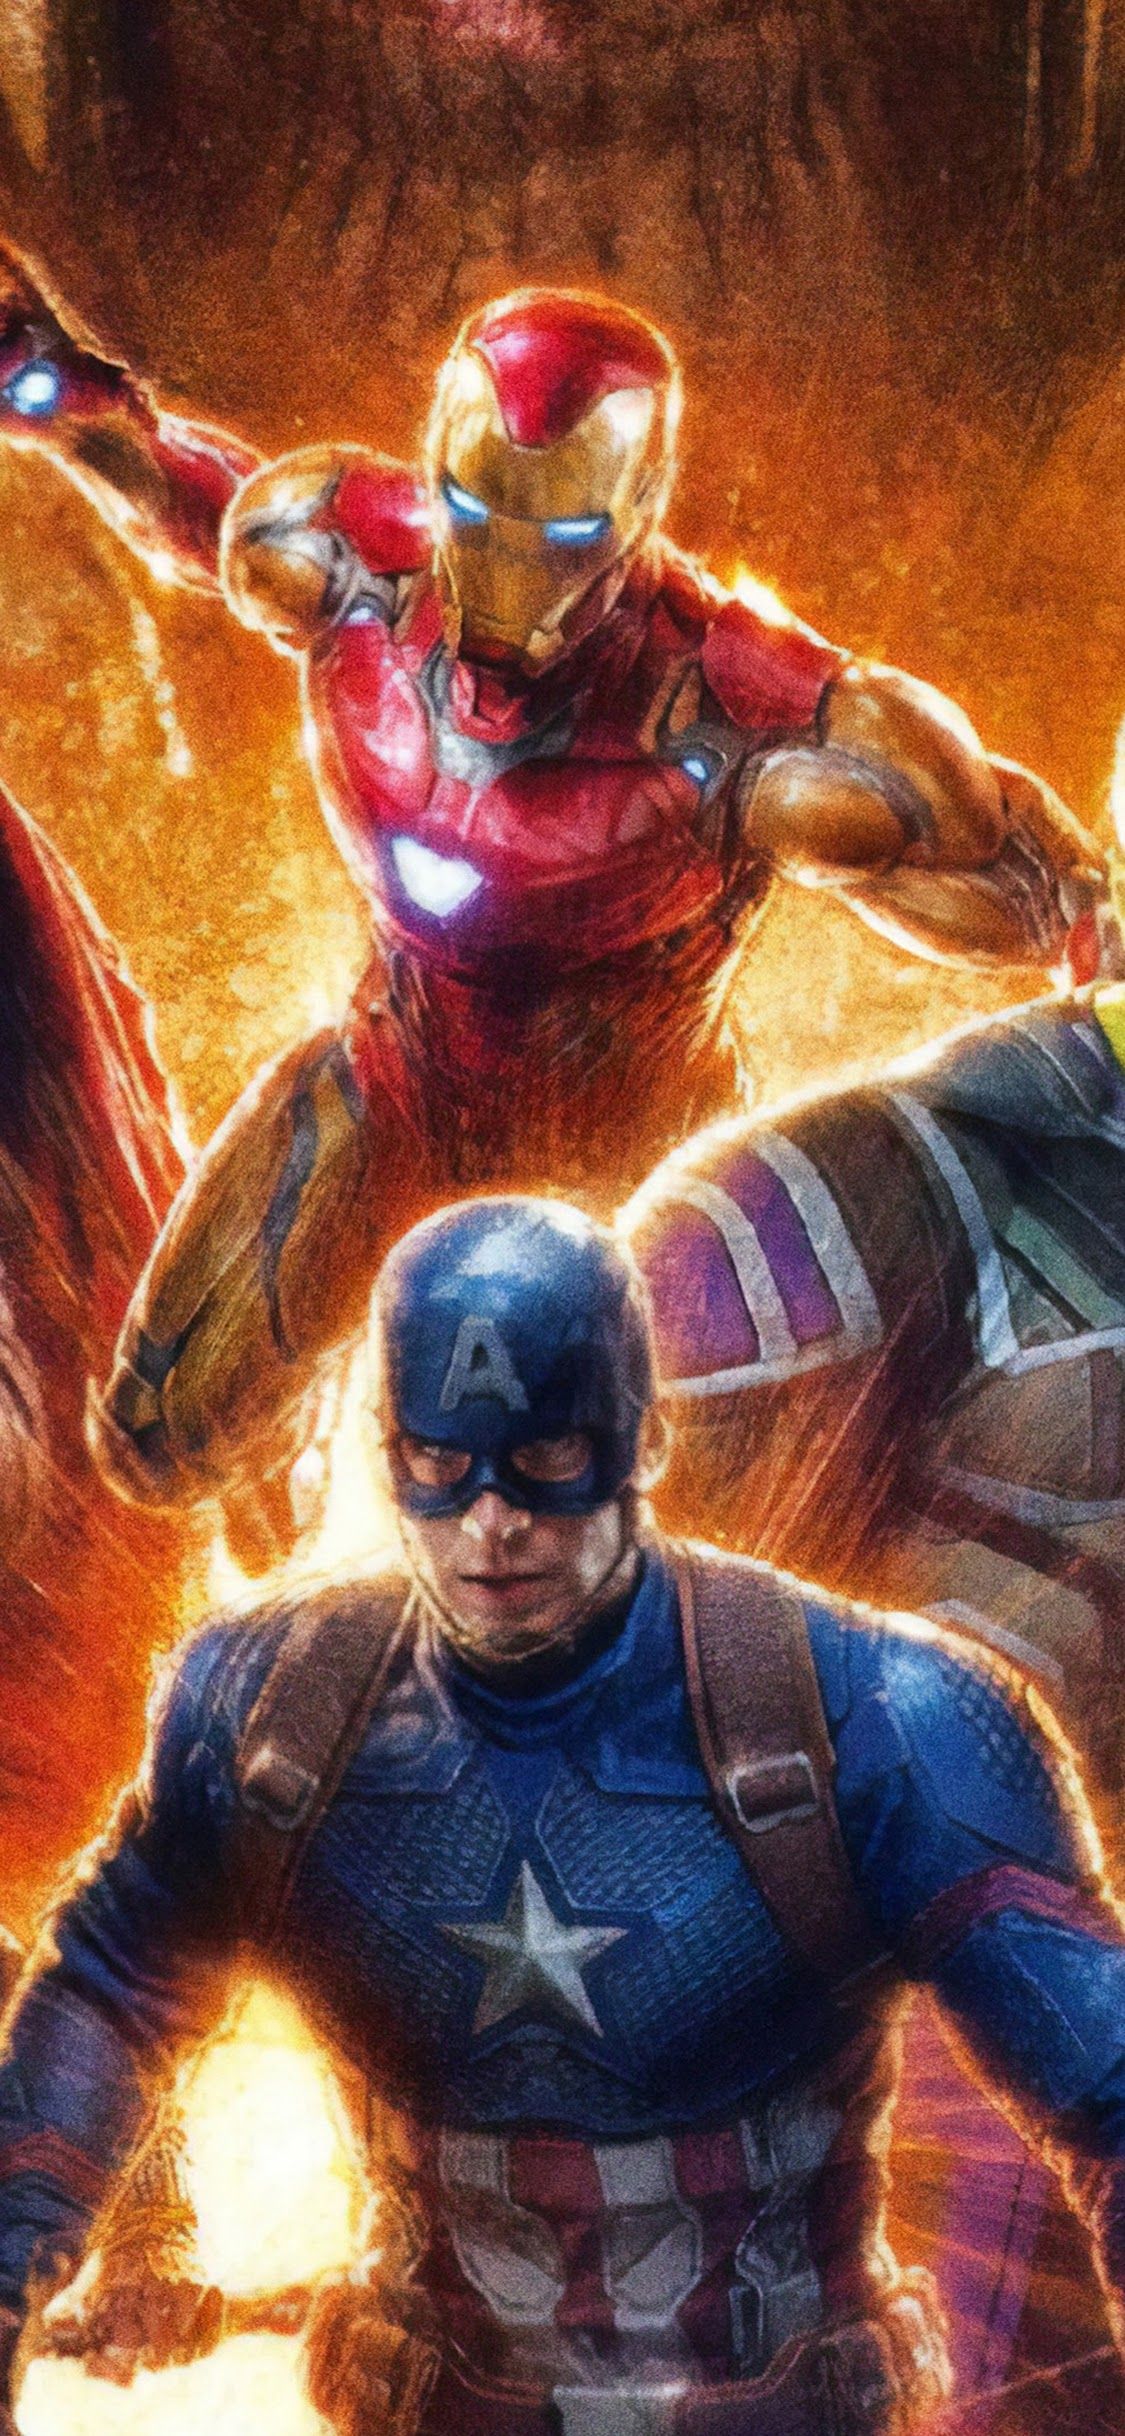 Avengers: Endgame Iron Man Captain America 4K Wallpaper